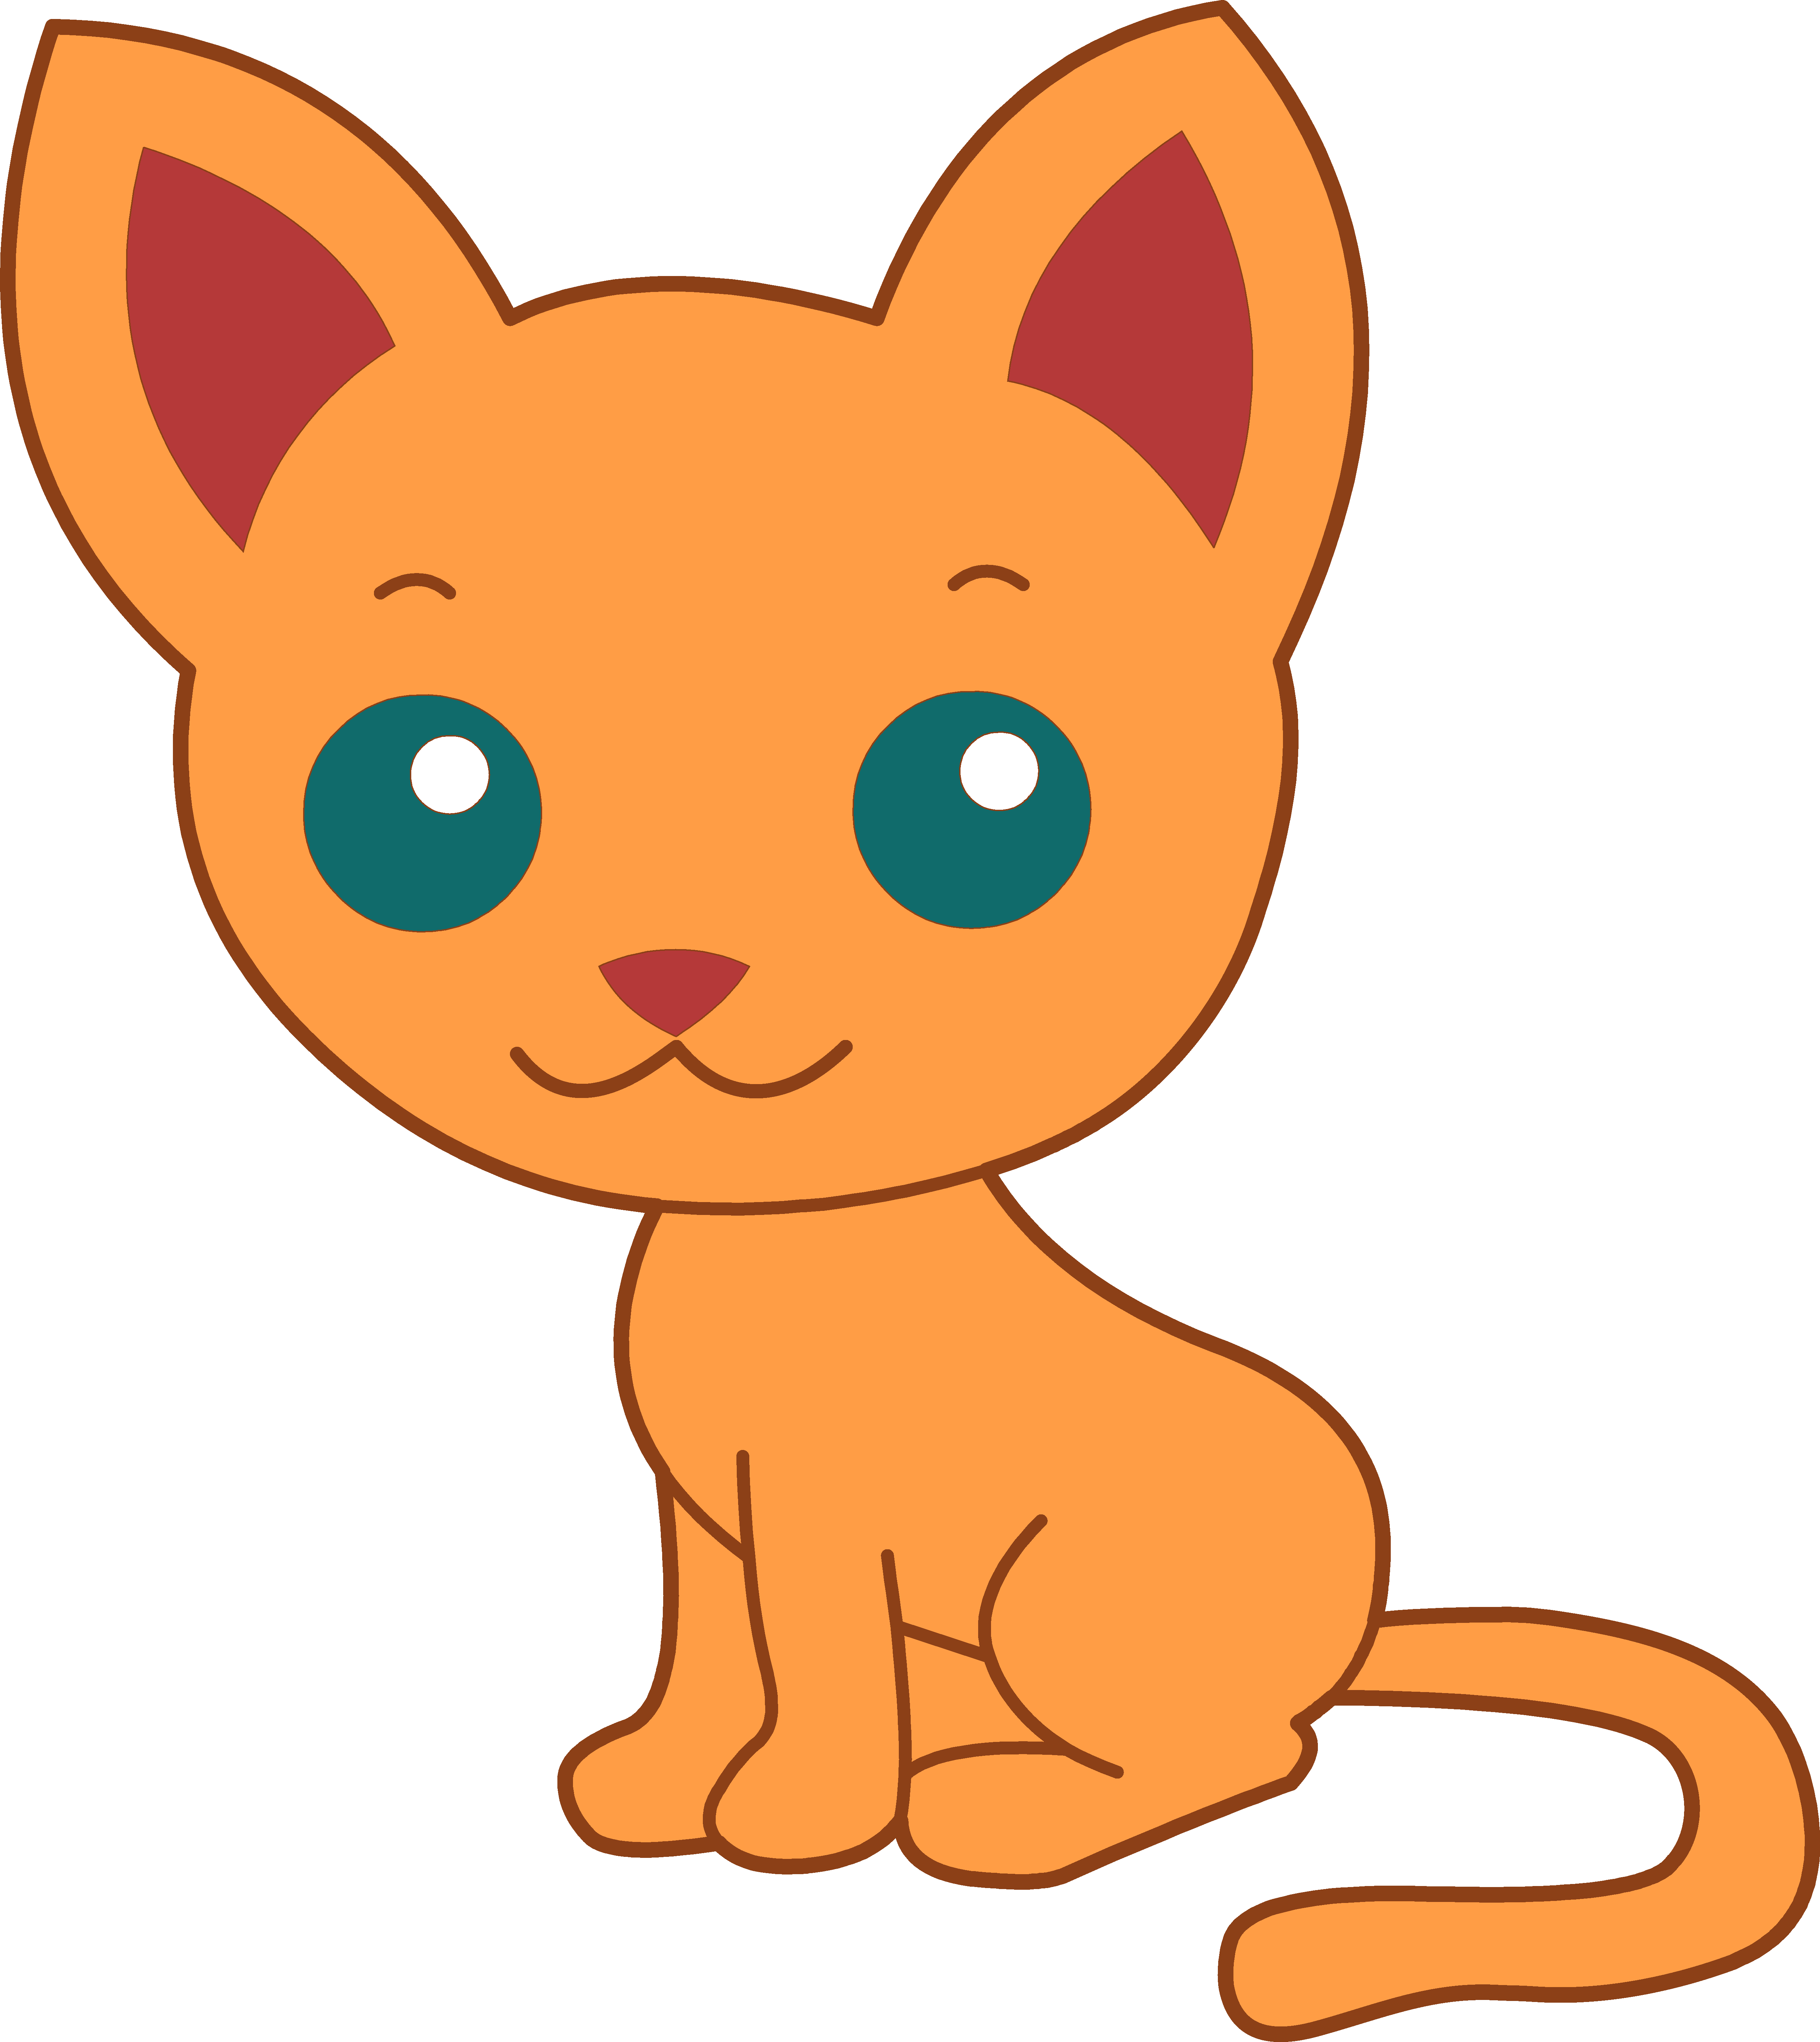 Free Transparent Cartoon Cat, Download Free Transparent Cartoon Cat png ...